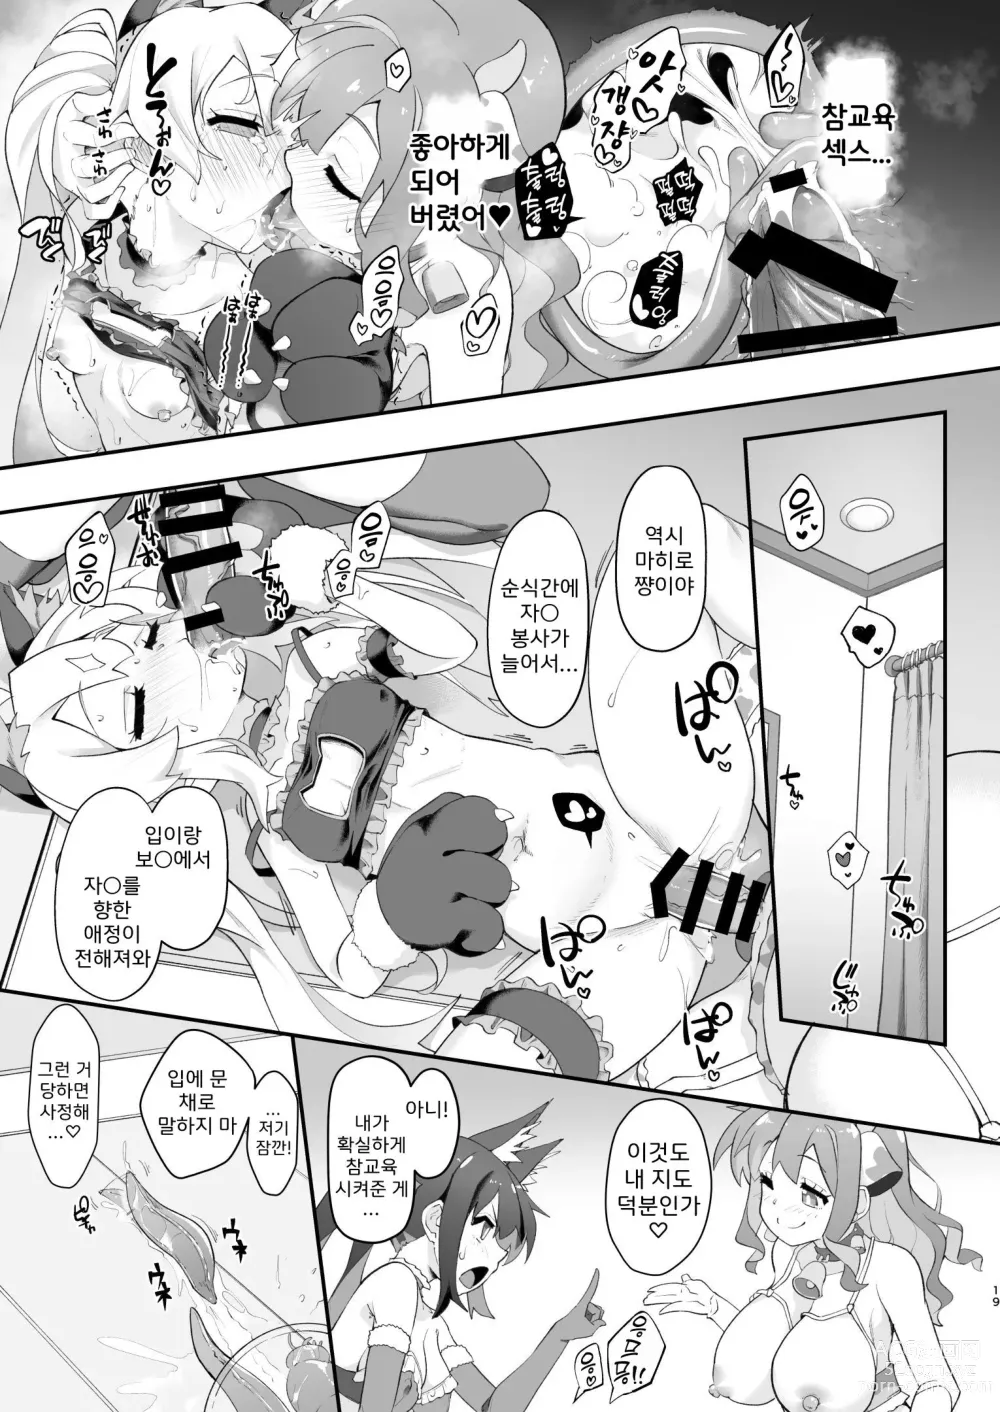 Page 19 of doujinshi 오빠가 못된 아가씨가 되어버려서 이것으로 참교육 하기로 했다